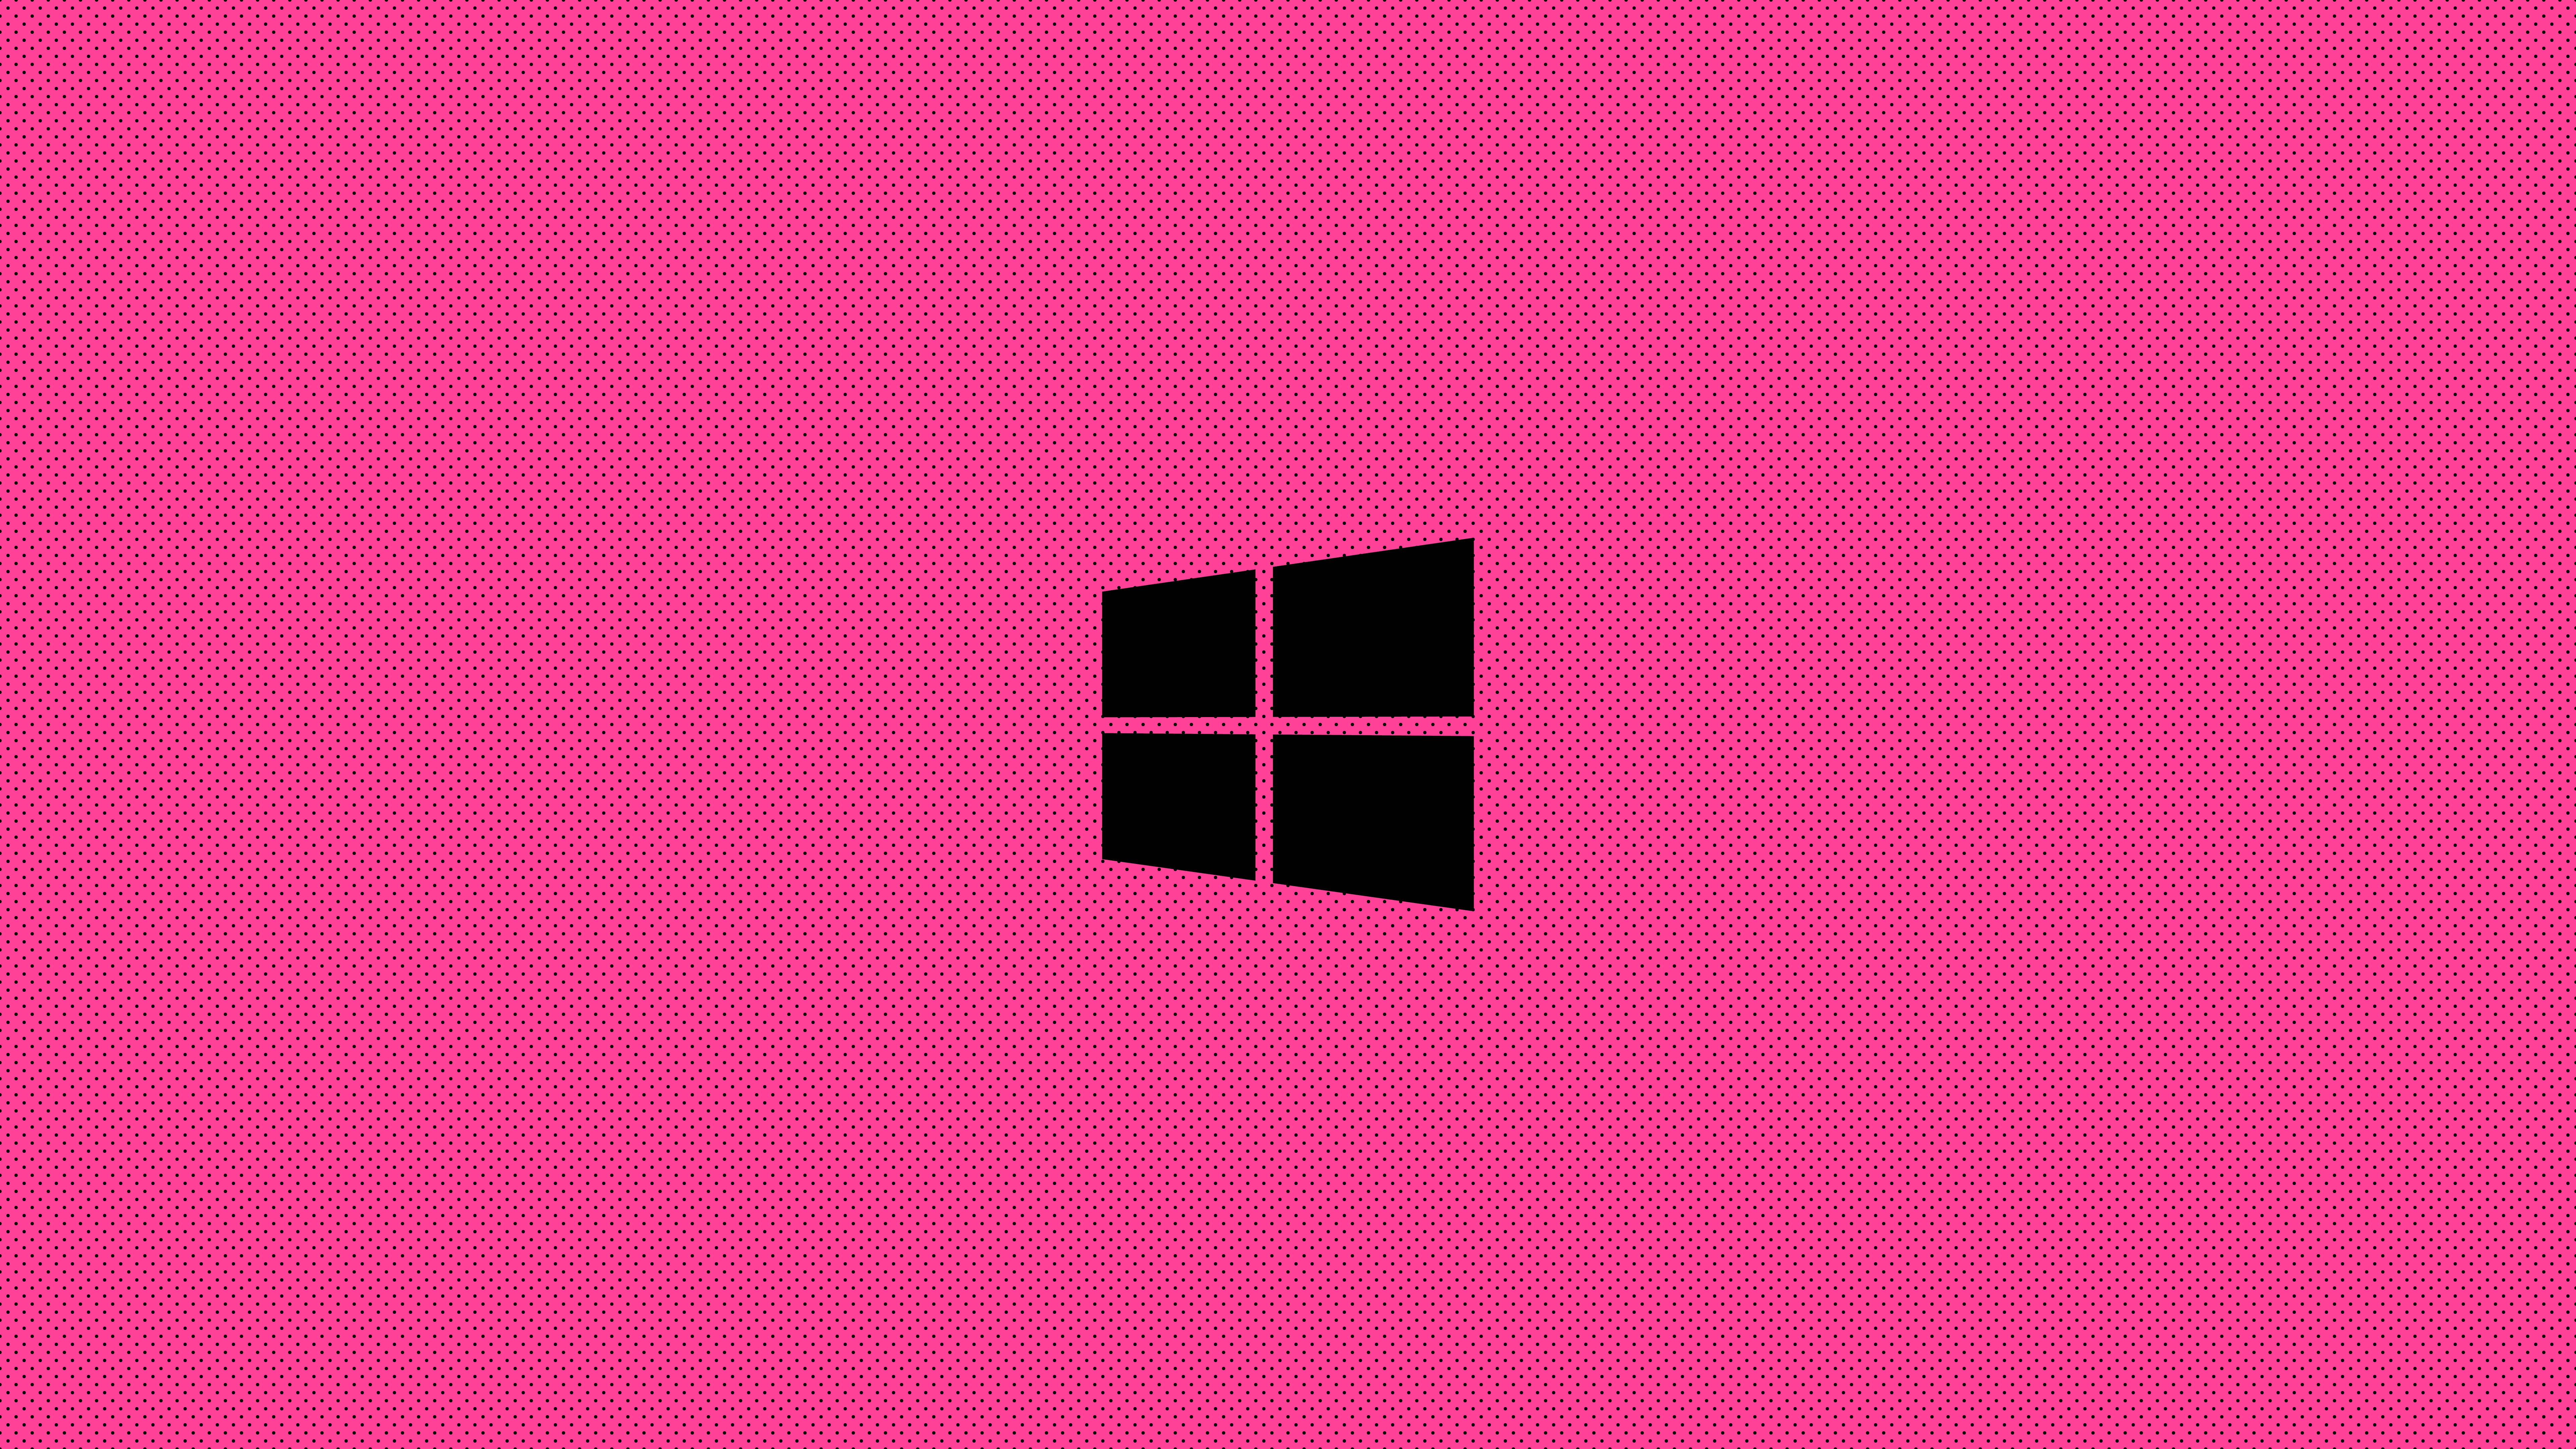 Hình nền Windows Pink Minimal Logo 8k có độ phân giải cực cao và thiết kế tối giản nhưng vô cùng ấn tượng. Bạn sẽ thật sự khó lòng cưỡng lại được vẻ đẹp tinh tế của hình ảnh này trên desktop của mình. Còn chần chừ gì nữa? Hãy tải ngay để trải nghiệm trọn vẹn sự đẳng cấp này!